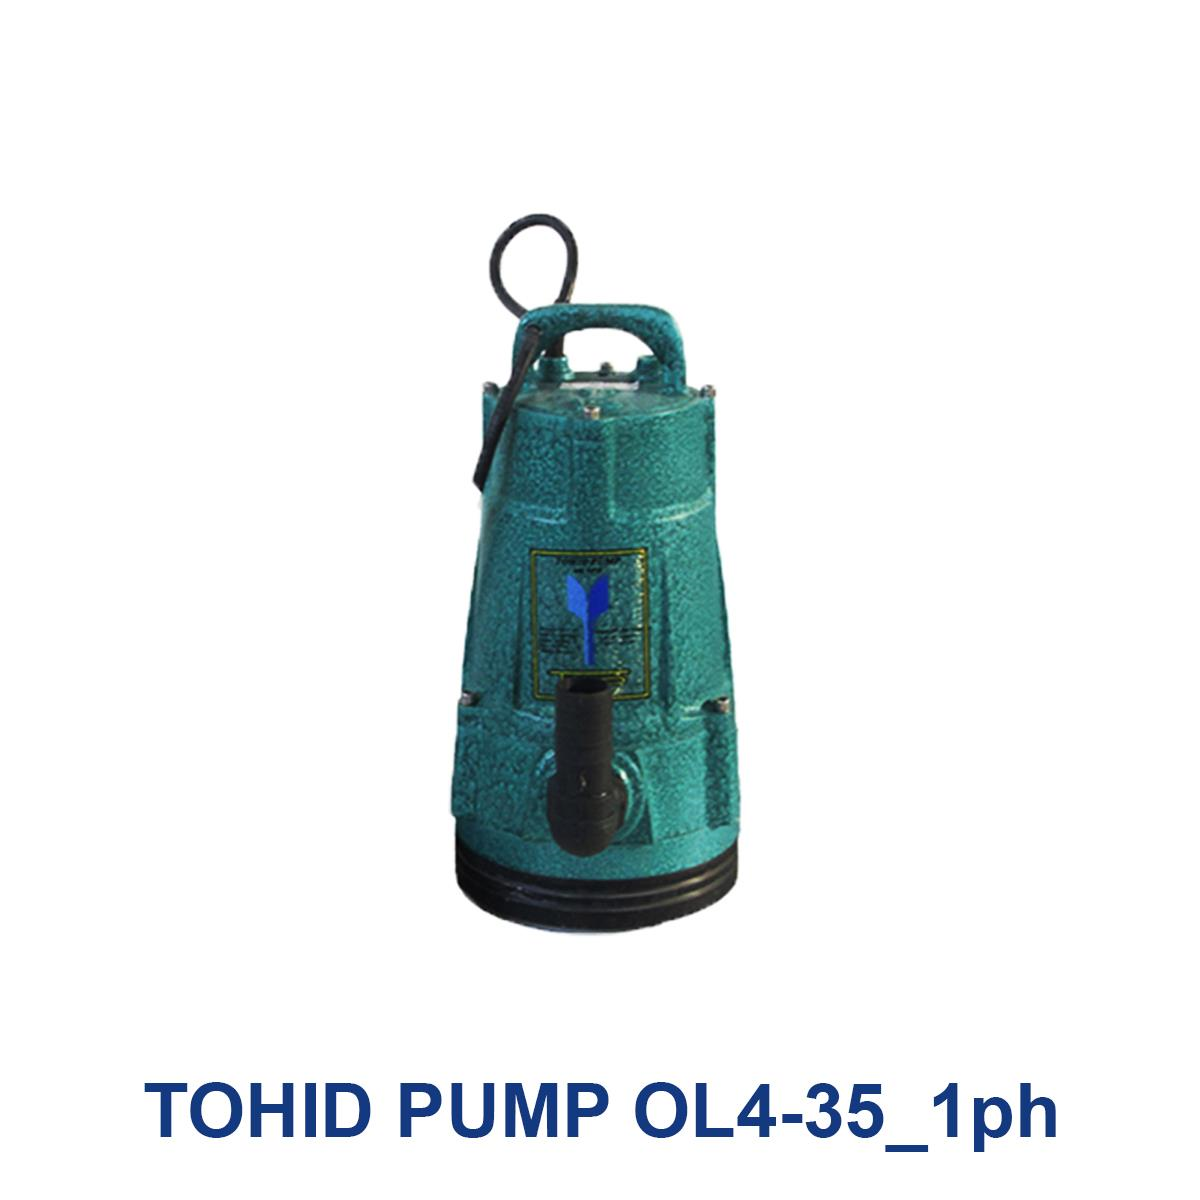 TOHID-PUMP-OL4-35_1ph